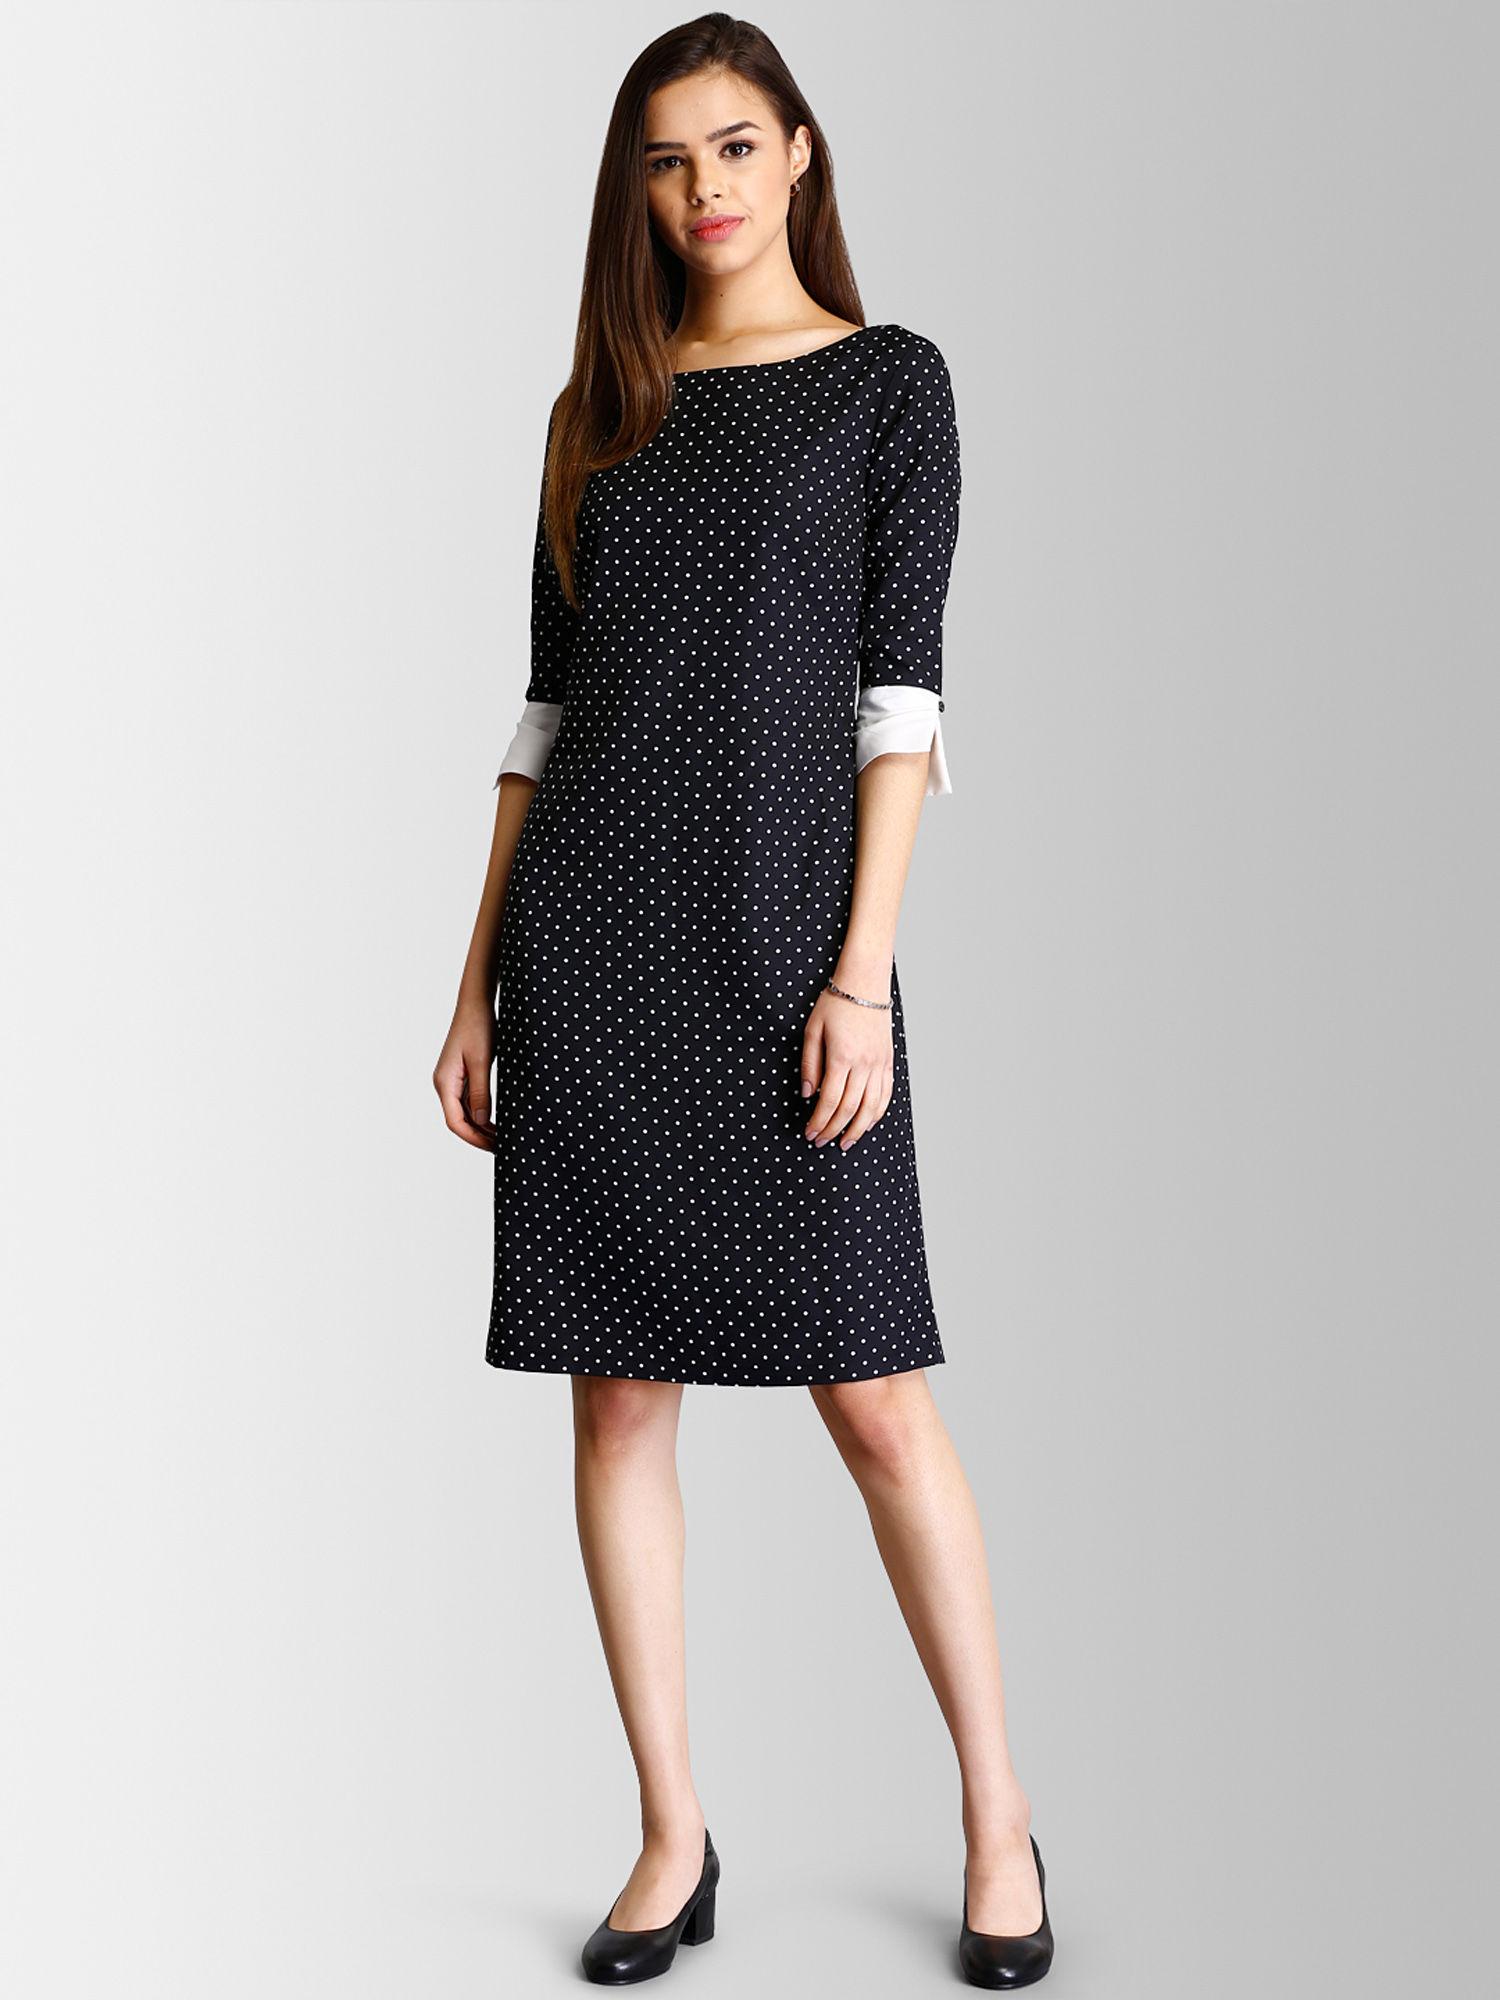 colour-block-polka-dot-shift-dress-black-&-white